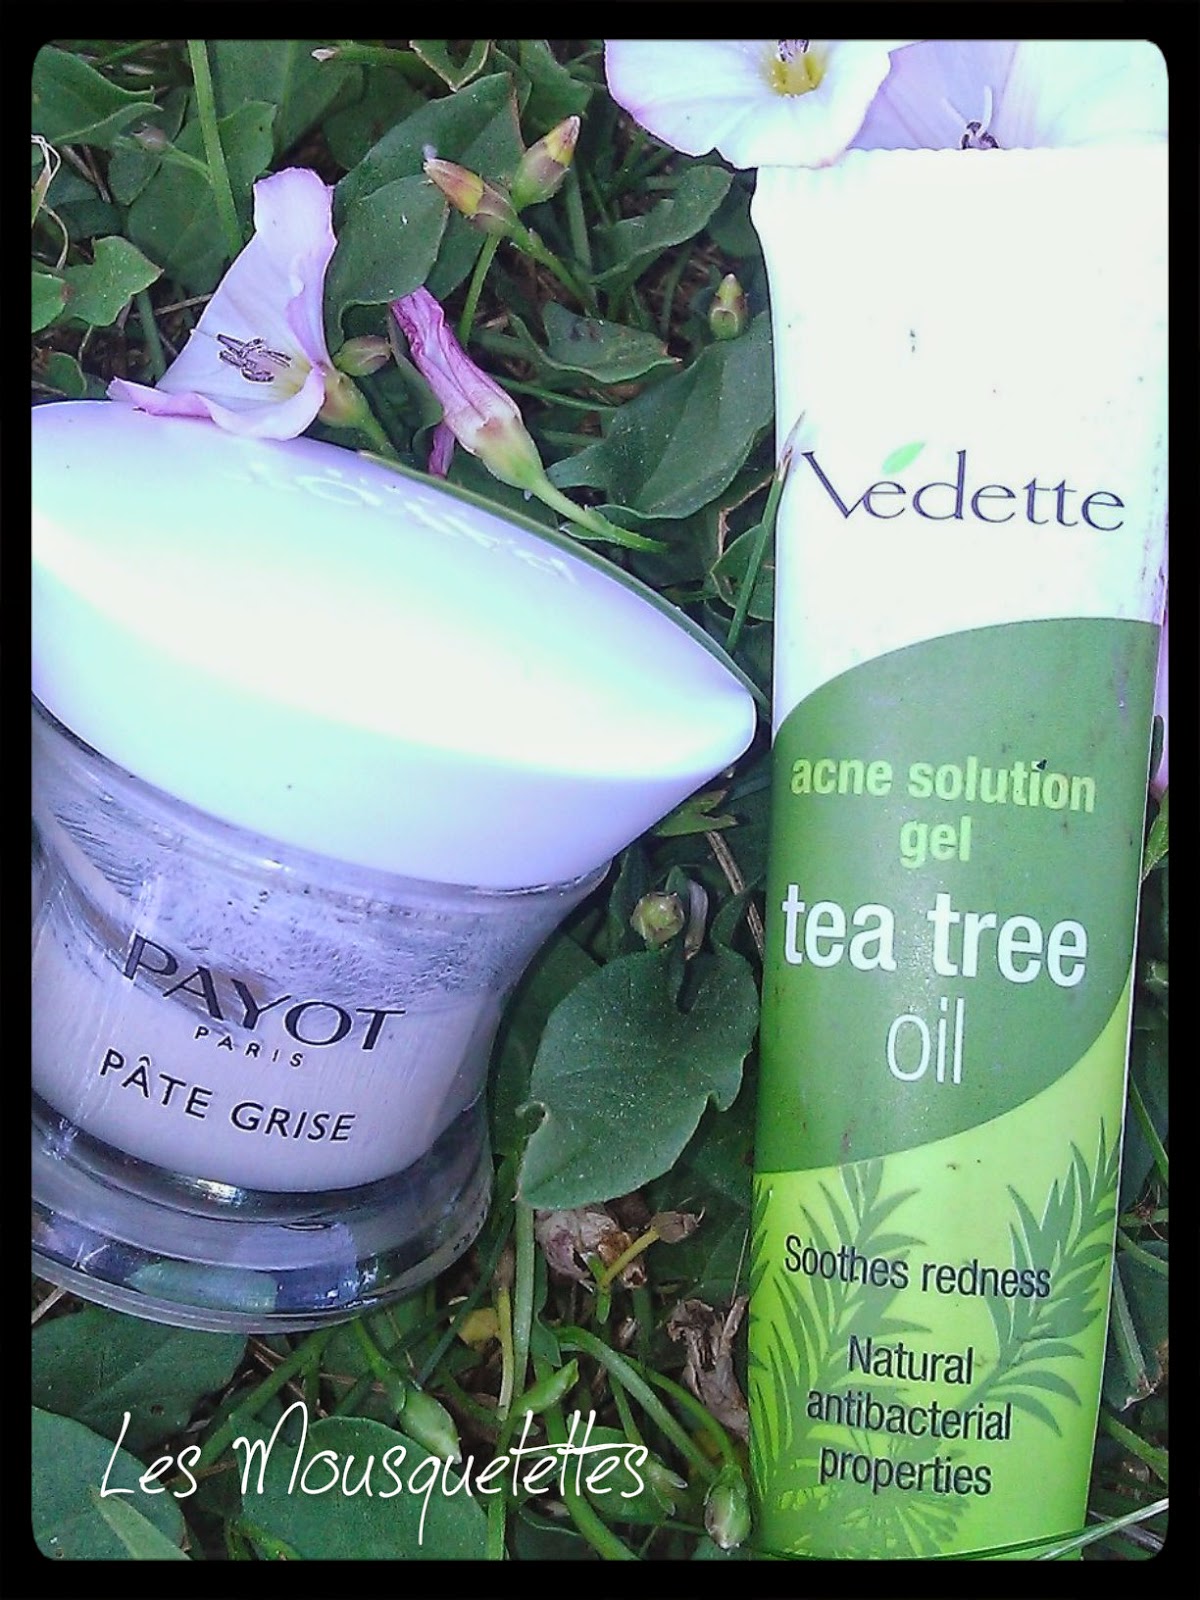 Pâte Grise Payot VS Tea Tree Oil Vedette - Les Mousquetettes©